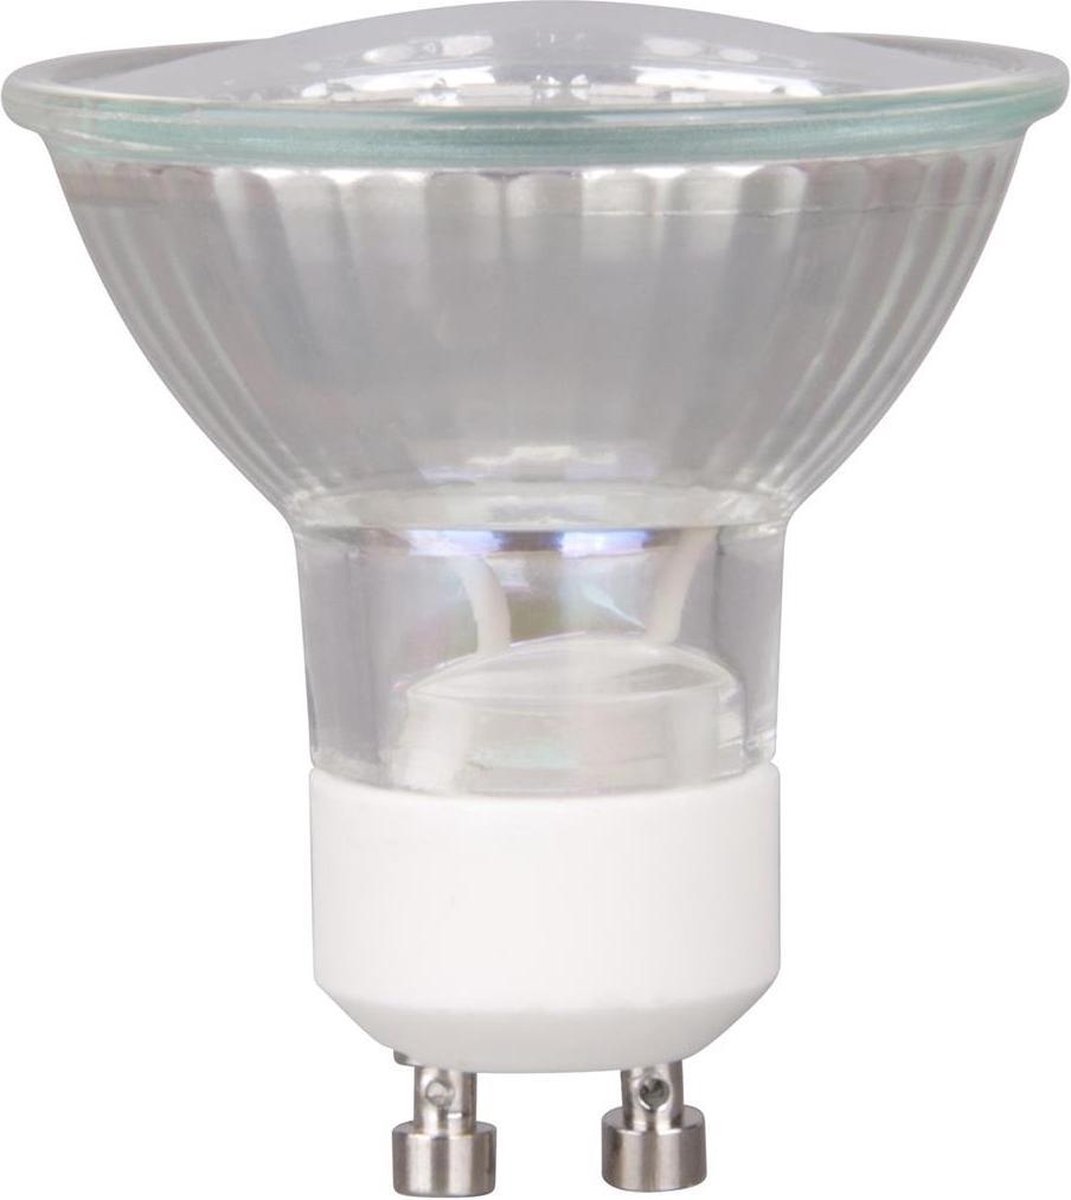 GU10 Led lamp 230 lumen 3W warm white 3000K | bol.com